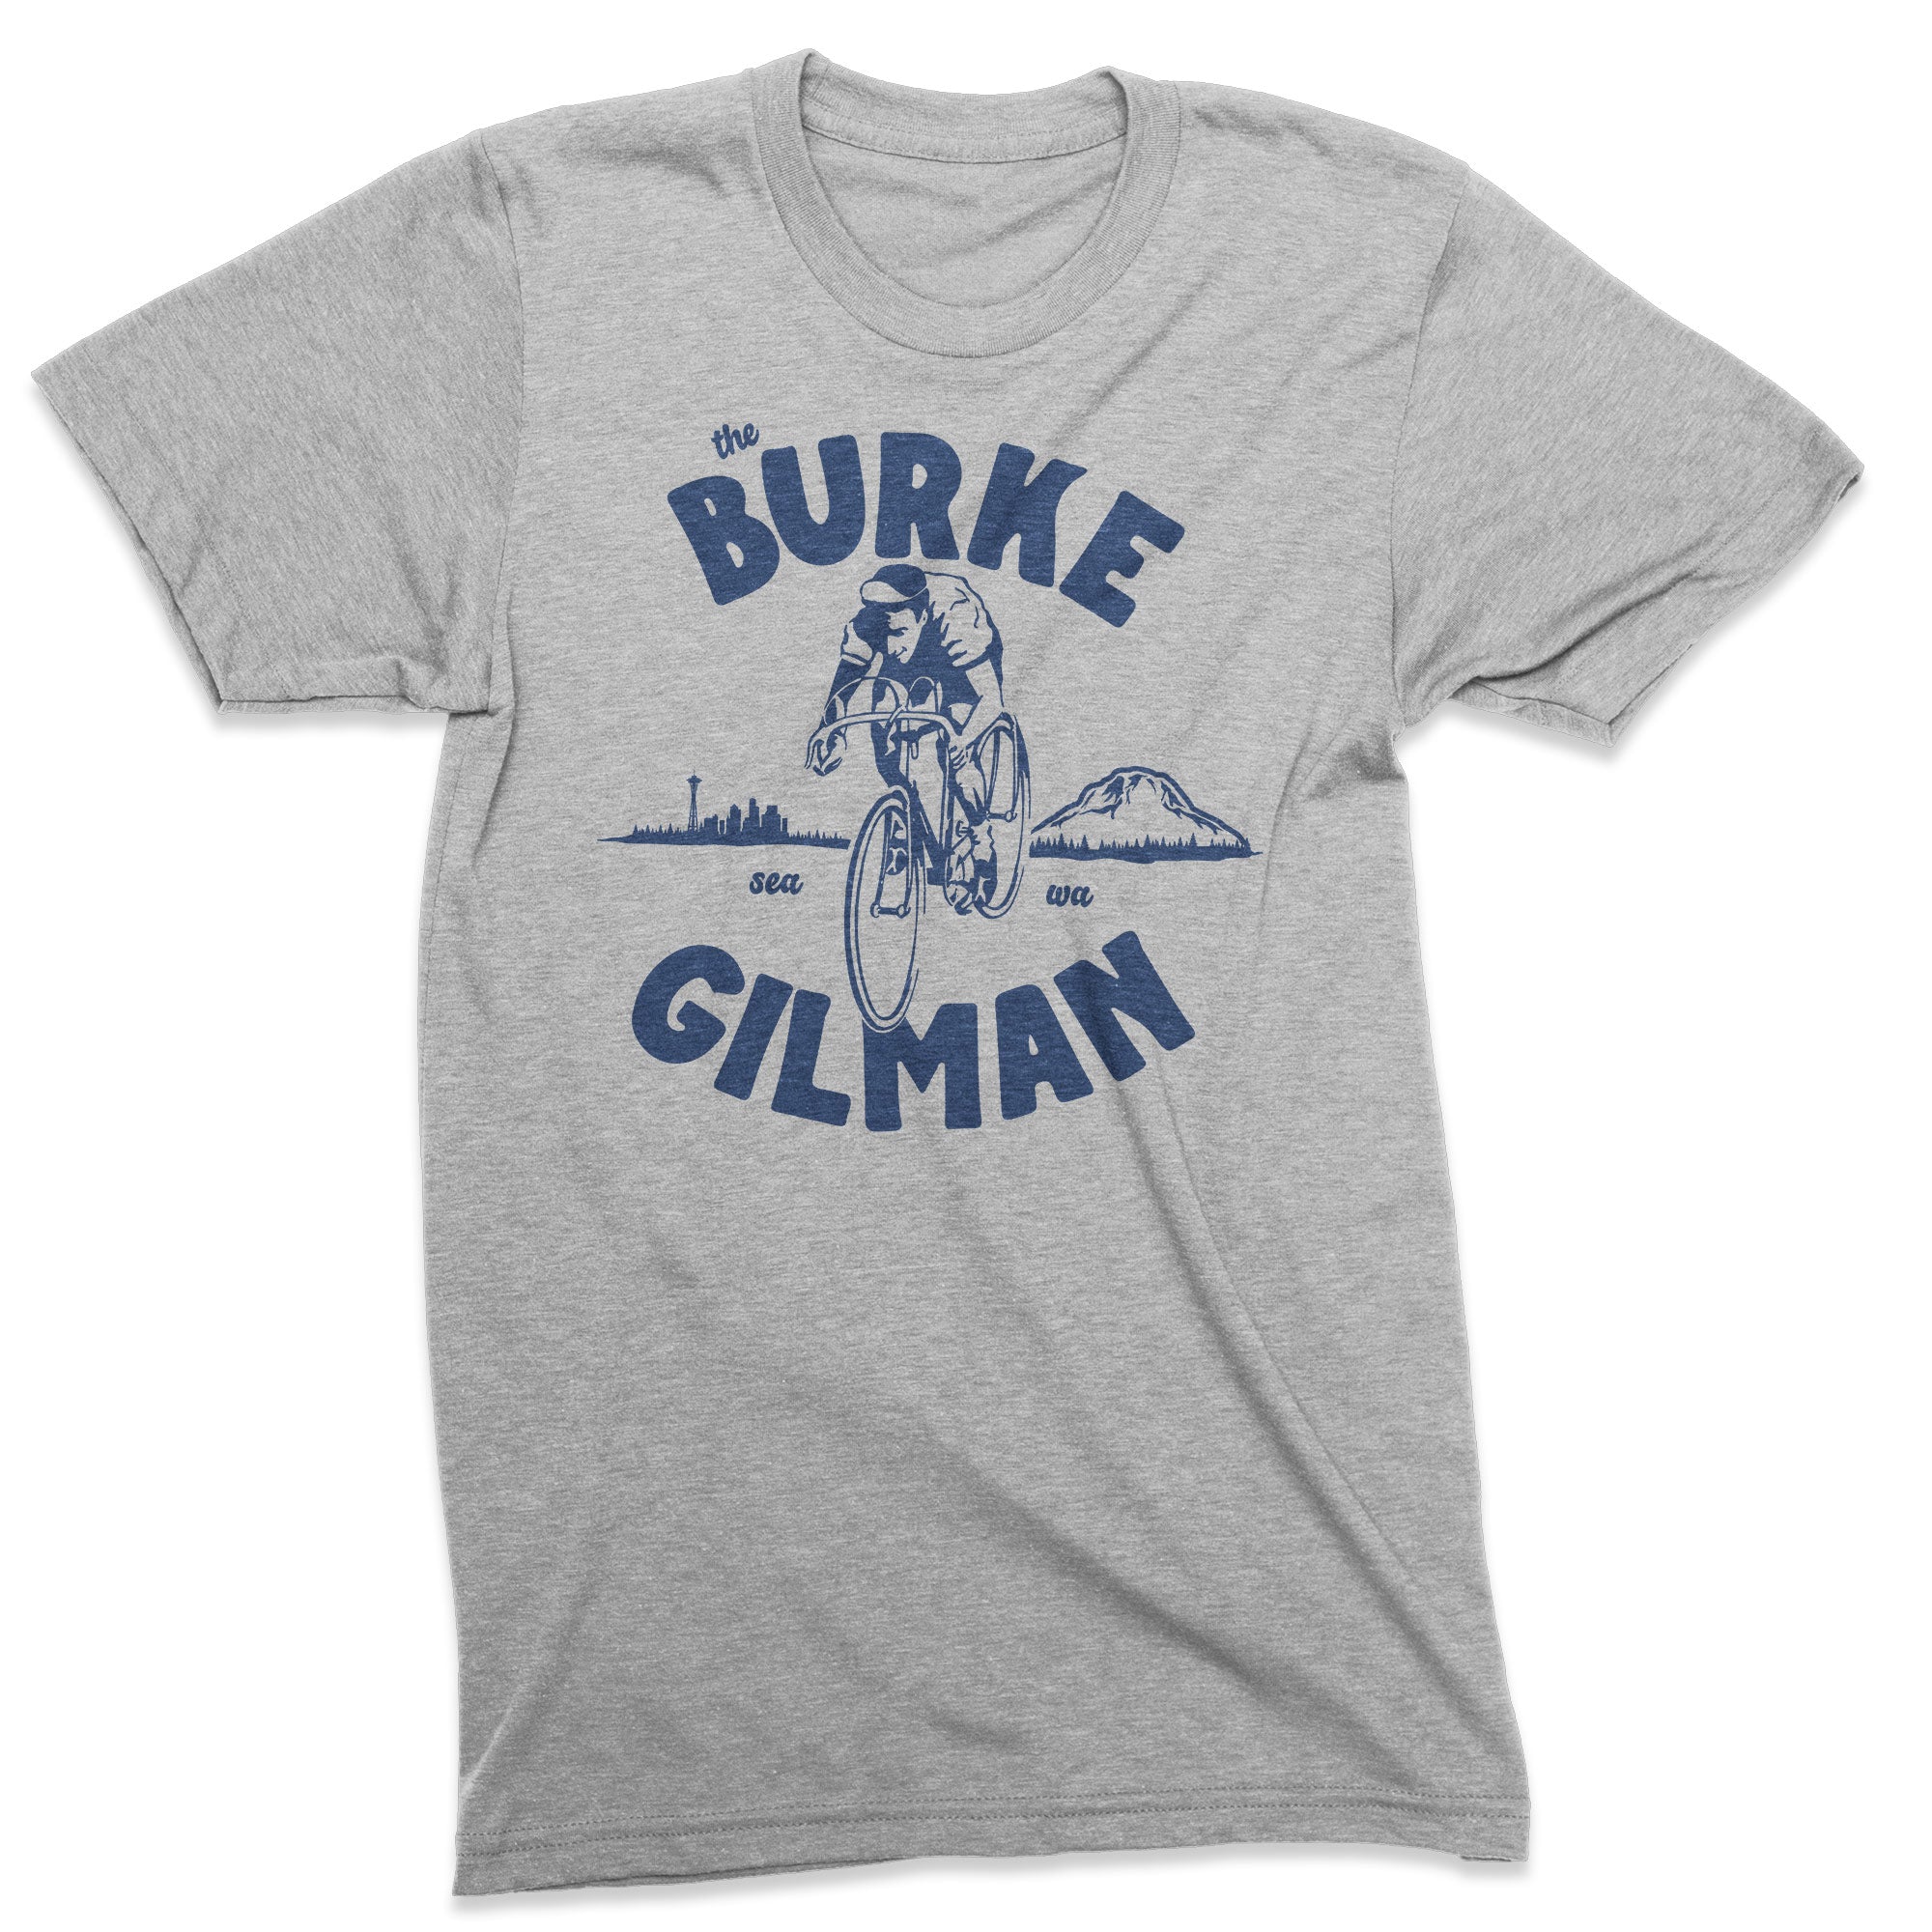 Burke Gilman Trail tshirt - Viaduct